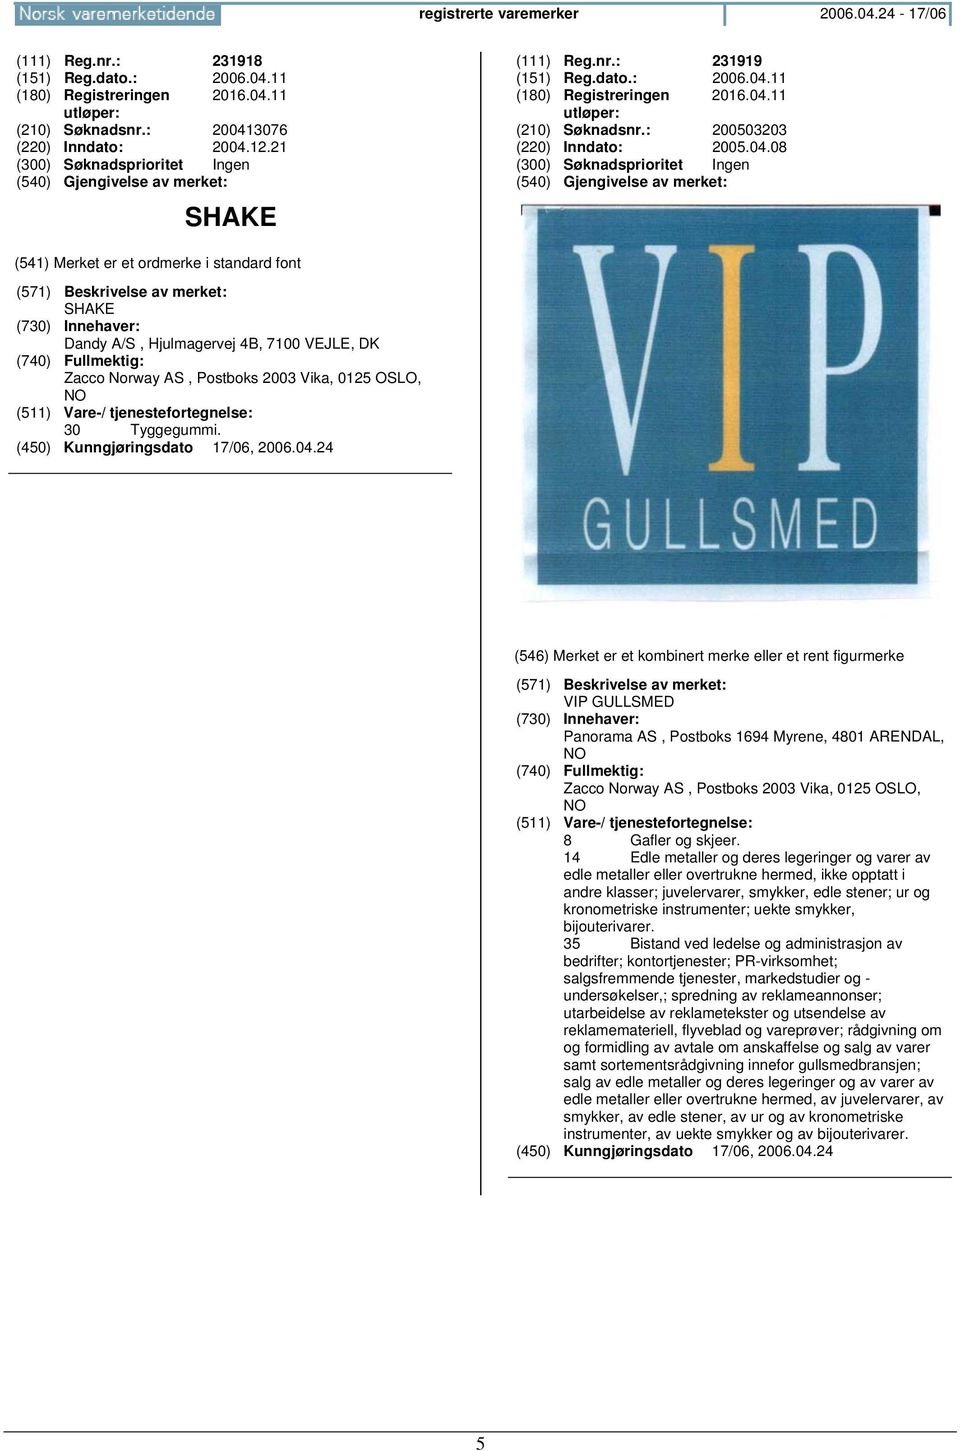 VIP GULLSMED Panorama AS, Postboks 1694 Myrene, 4801 ARENDAL, Zacco Norway AS, Postboks 2003 Vika, 0125 OSLO, 8 Gafler og skjeer.